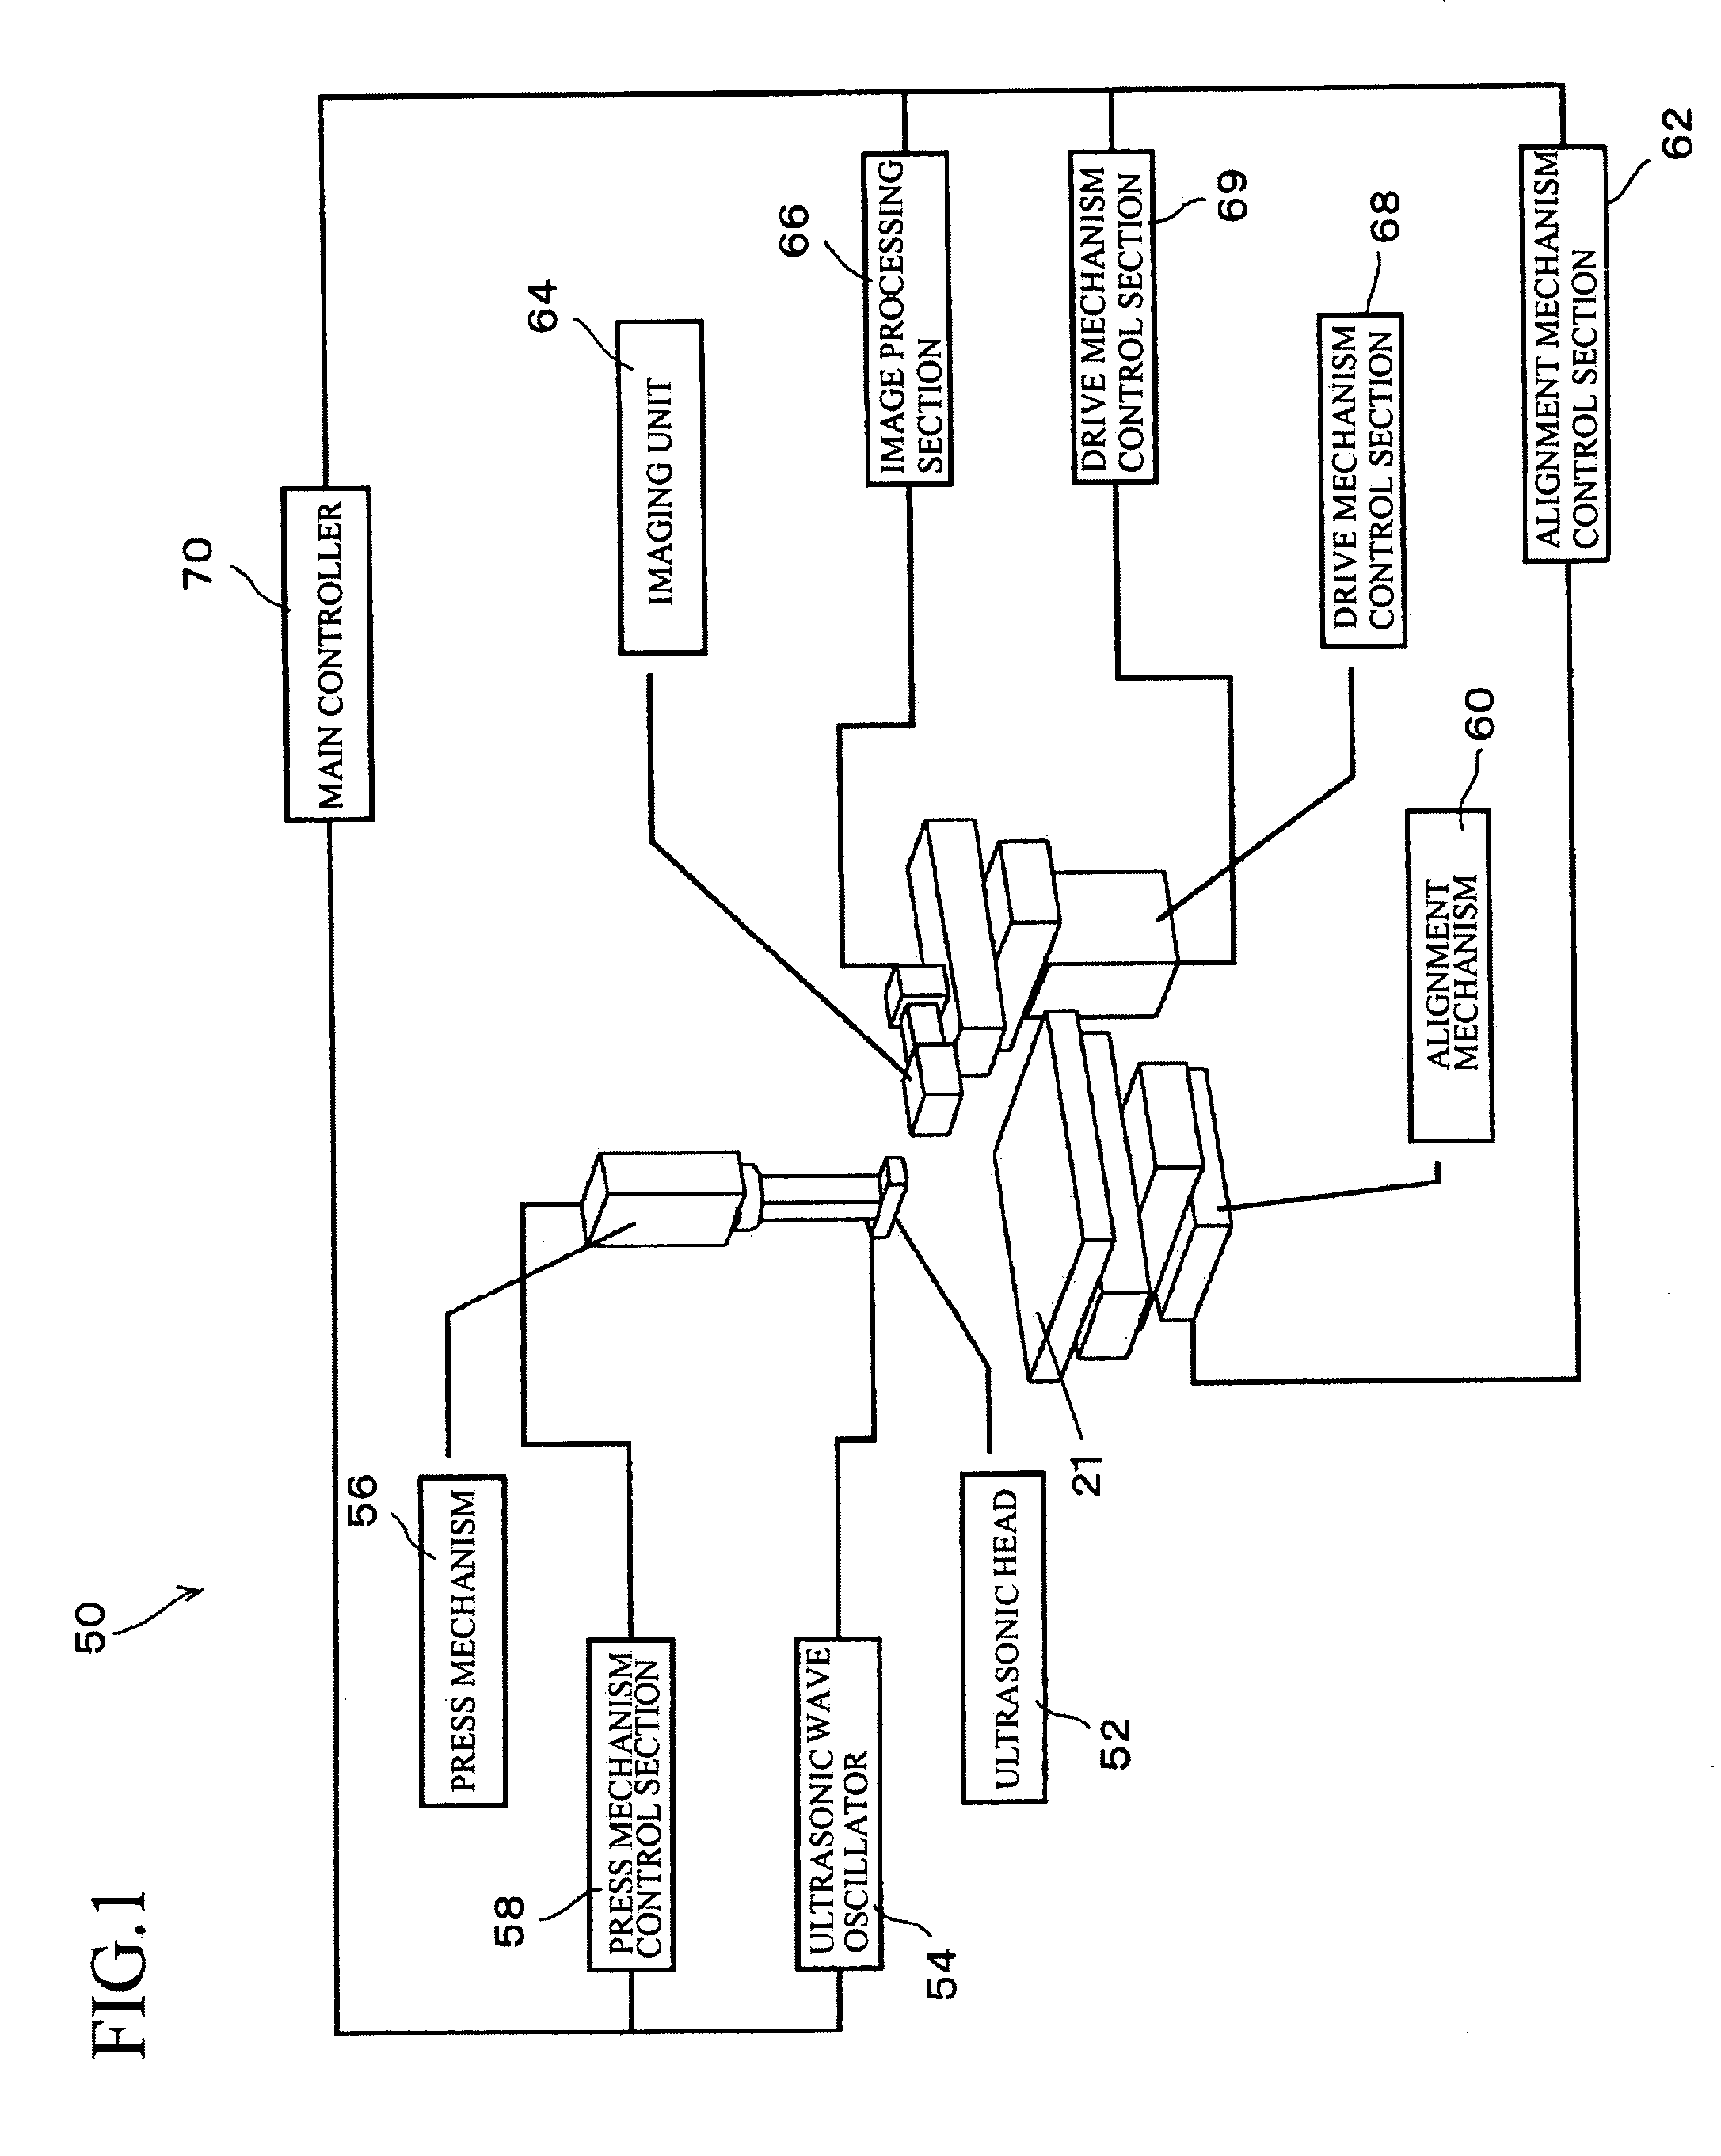 Method of ultrasonic-mounting electronic component and ultrasonic mounting machine